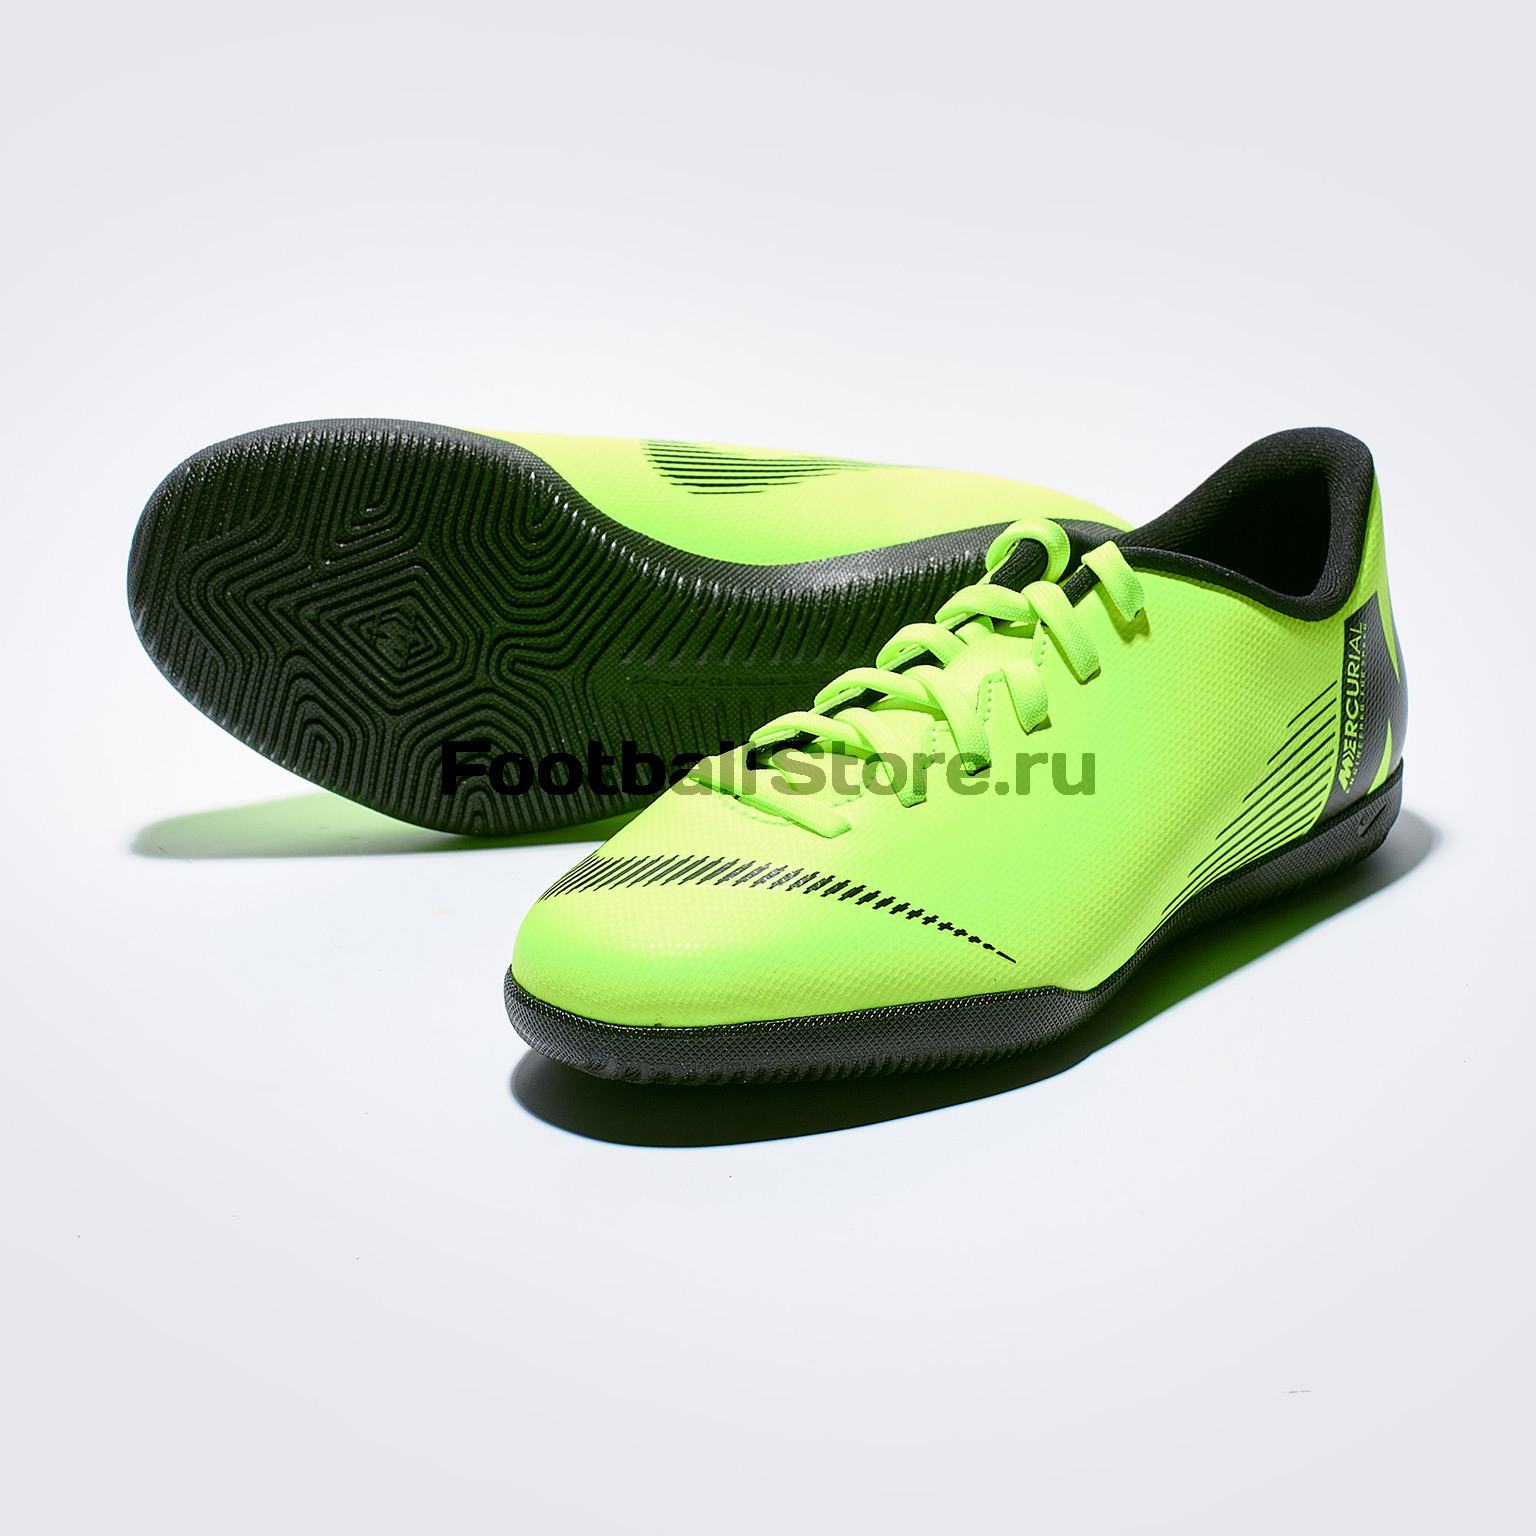 Футзалки детские Nike VaporX 12 Club GS IC AH7354-701